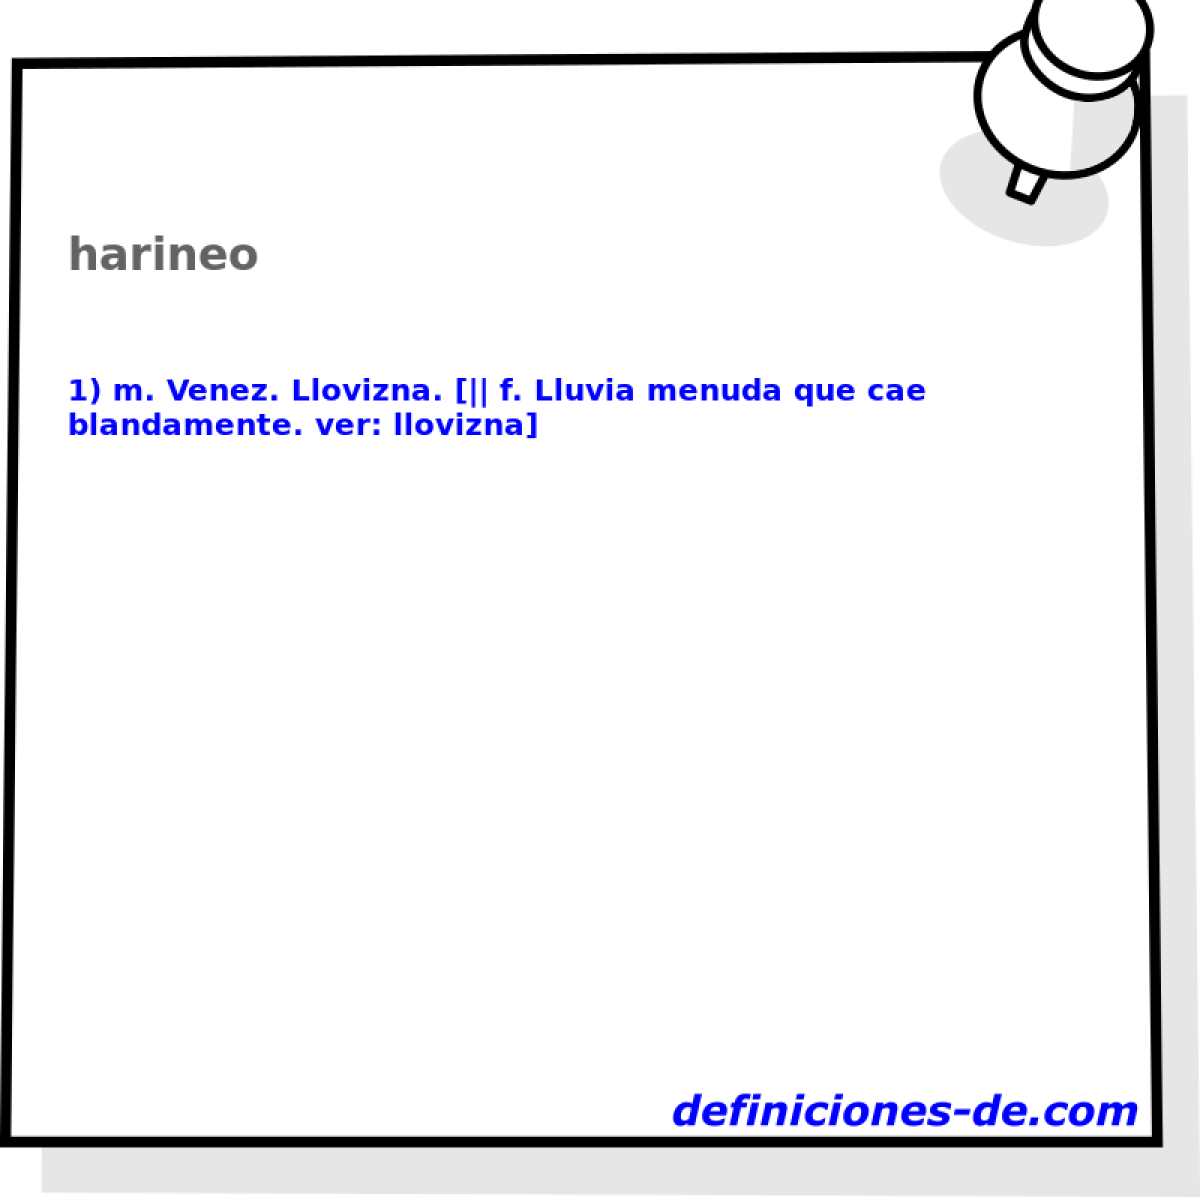 harineo 